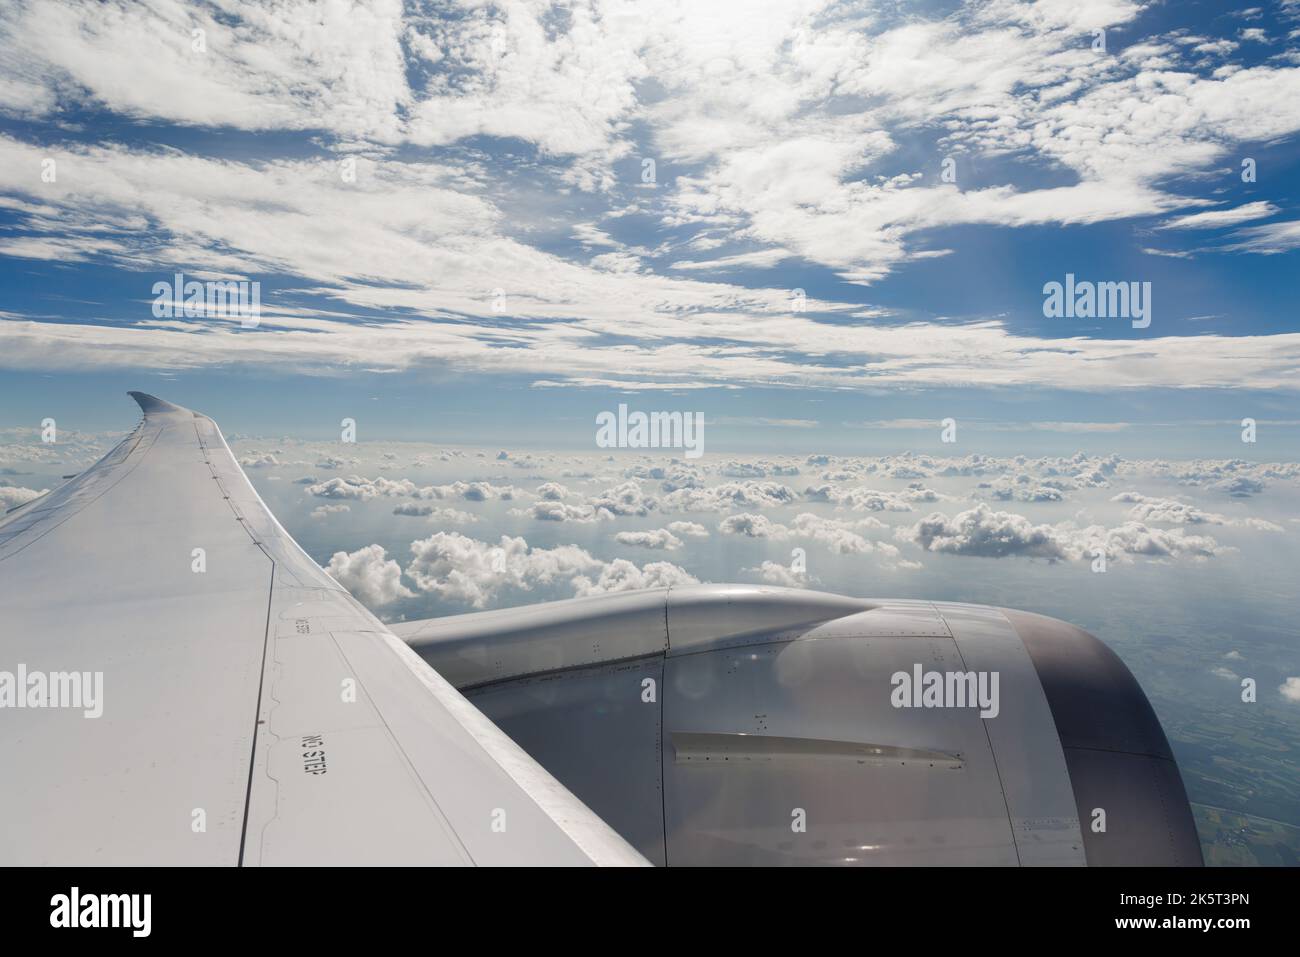 Vol et voyage, vue depuis une fenêtre d'avion sur l'aile Banque D'Images